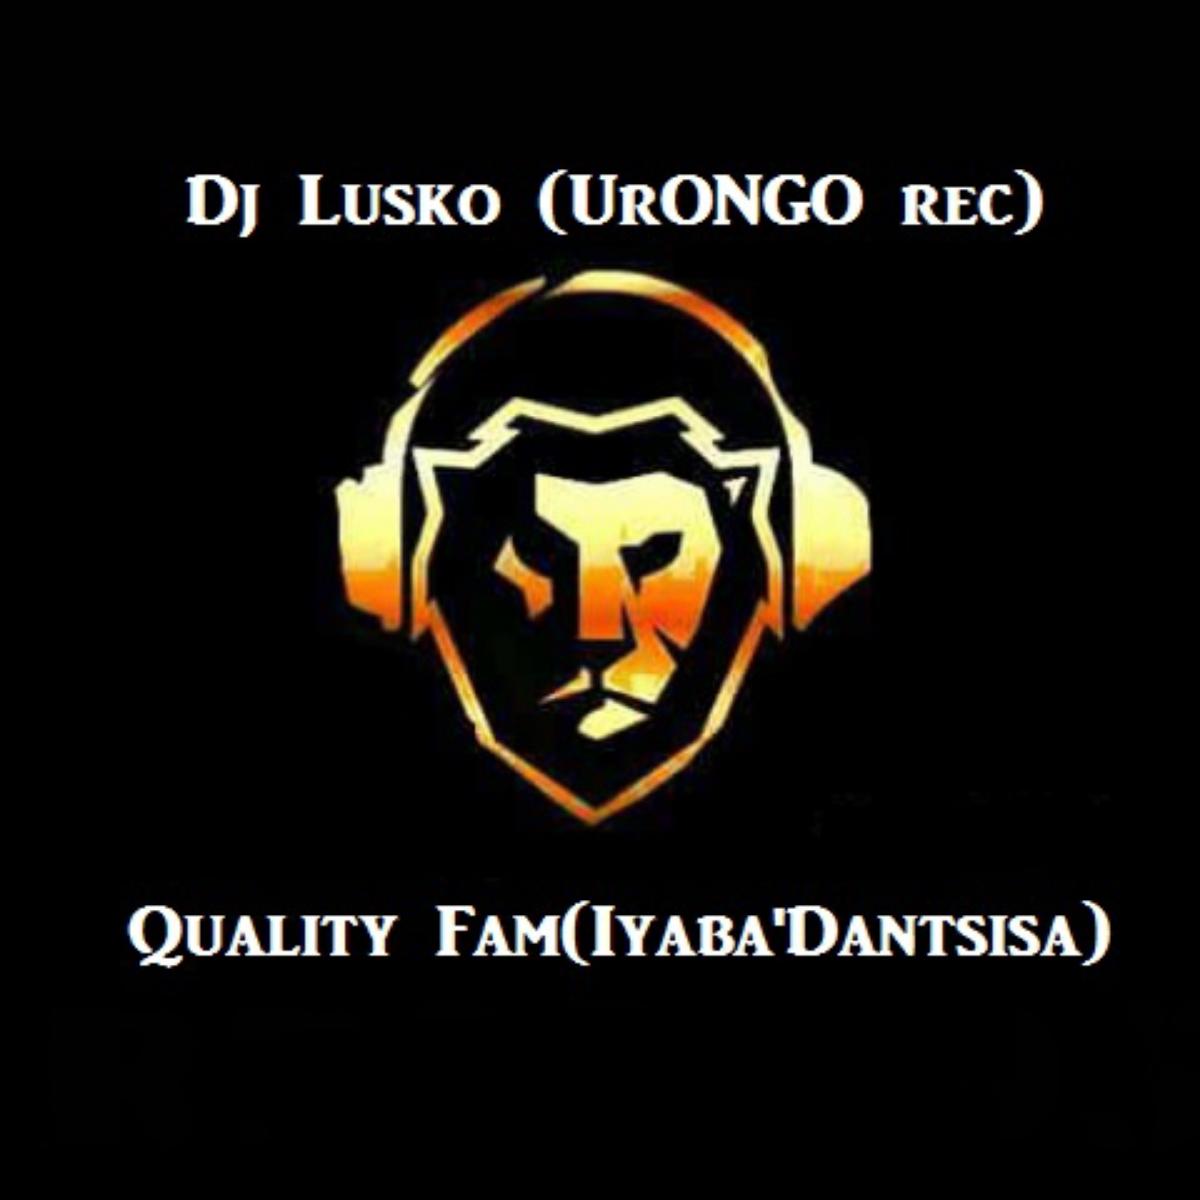 Quality Fam & Dj Lusko - Fire All The Way